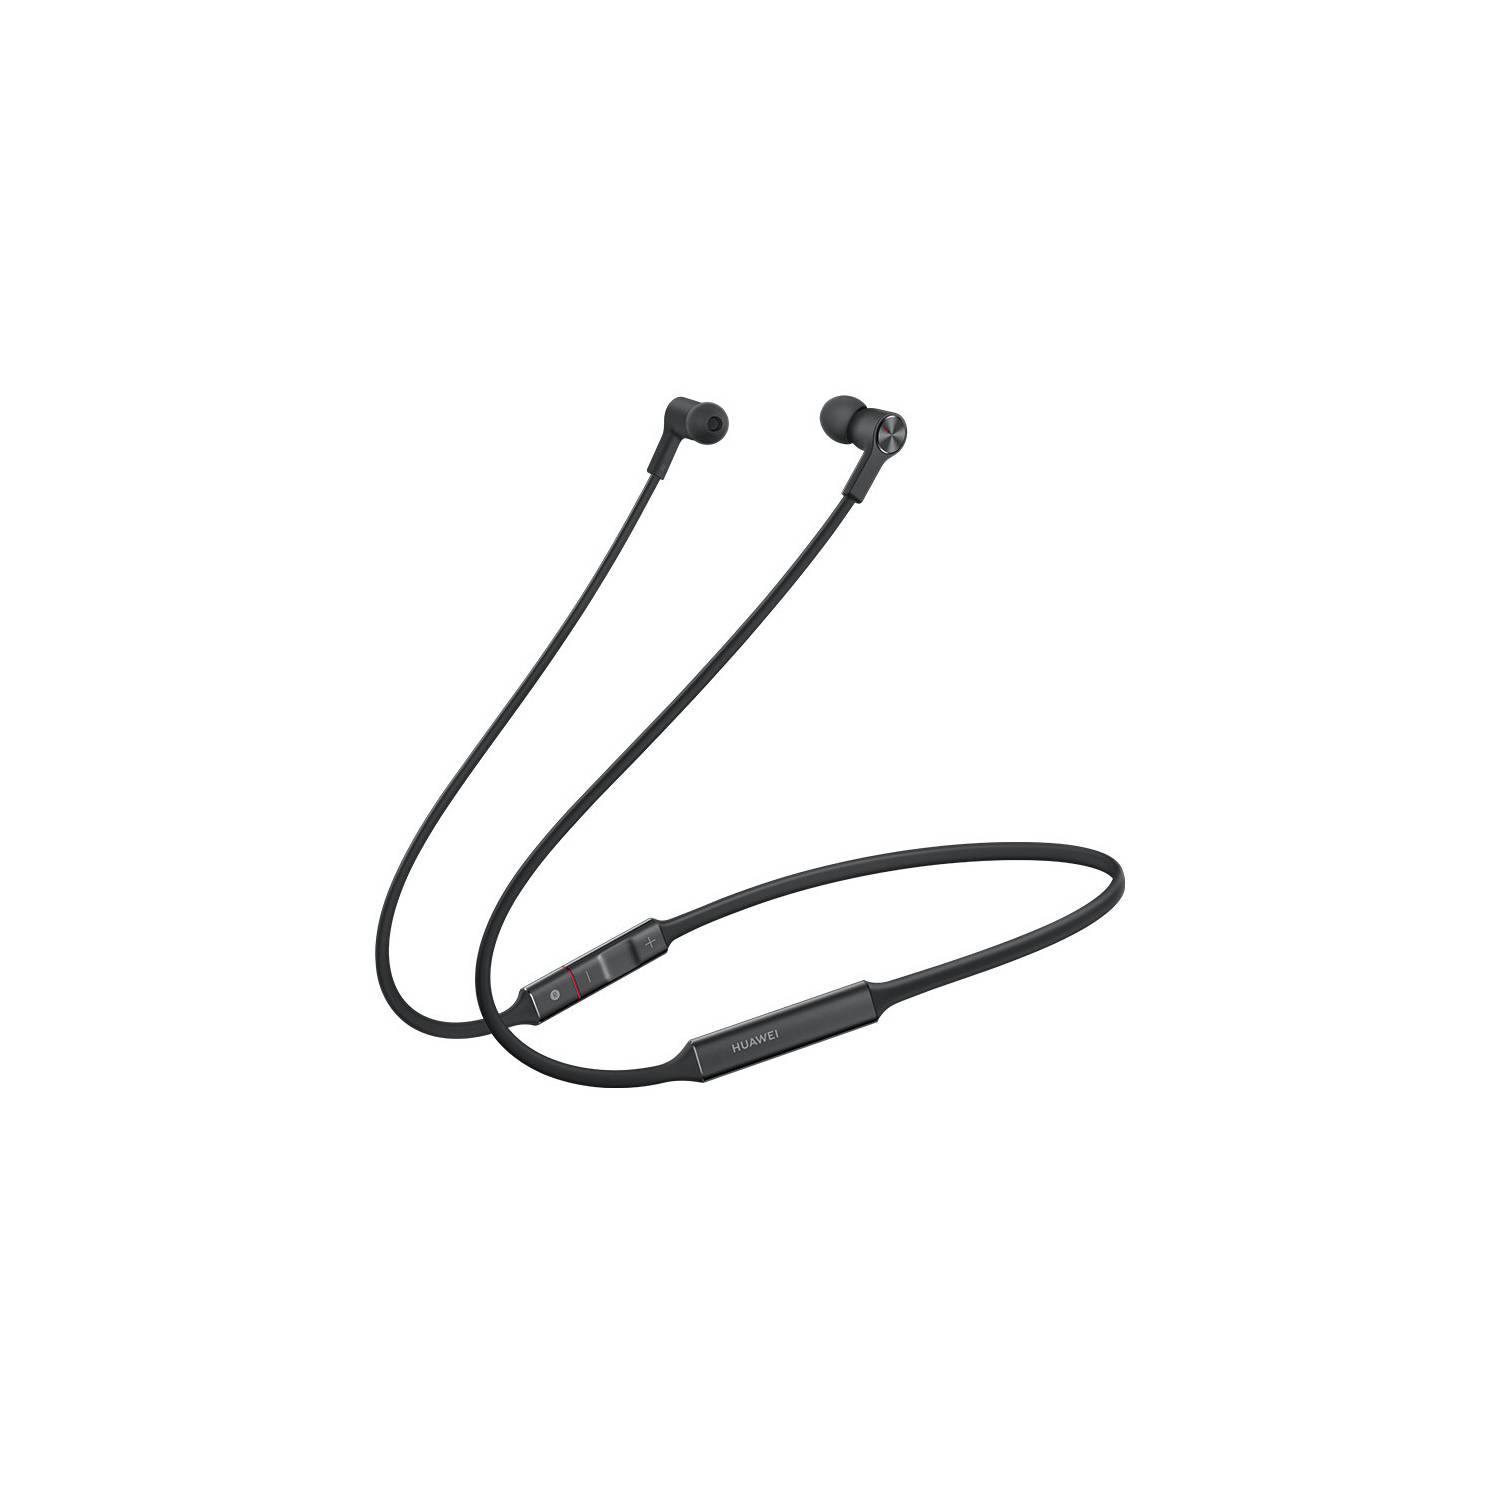 Huawei-auriculares inalámbricos Freelace Lite, audífonos originales con  Bluetooth, deportivos, reducción de ruido, intrauditivos